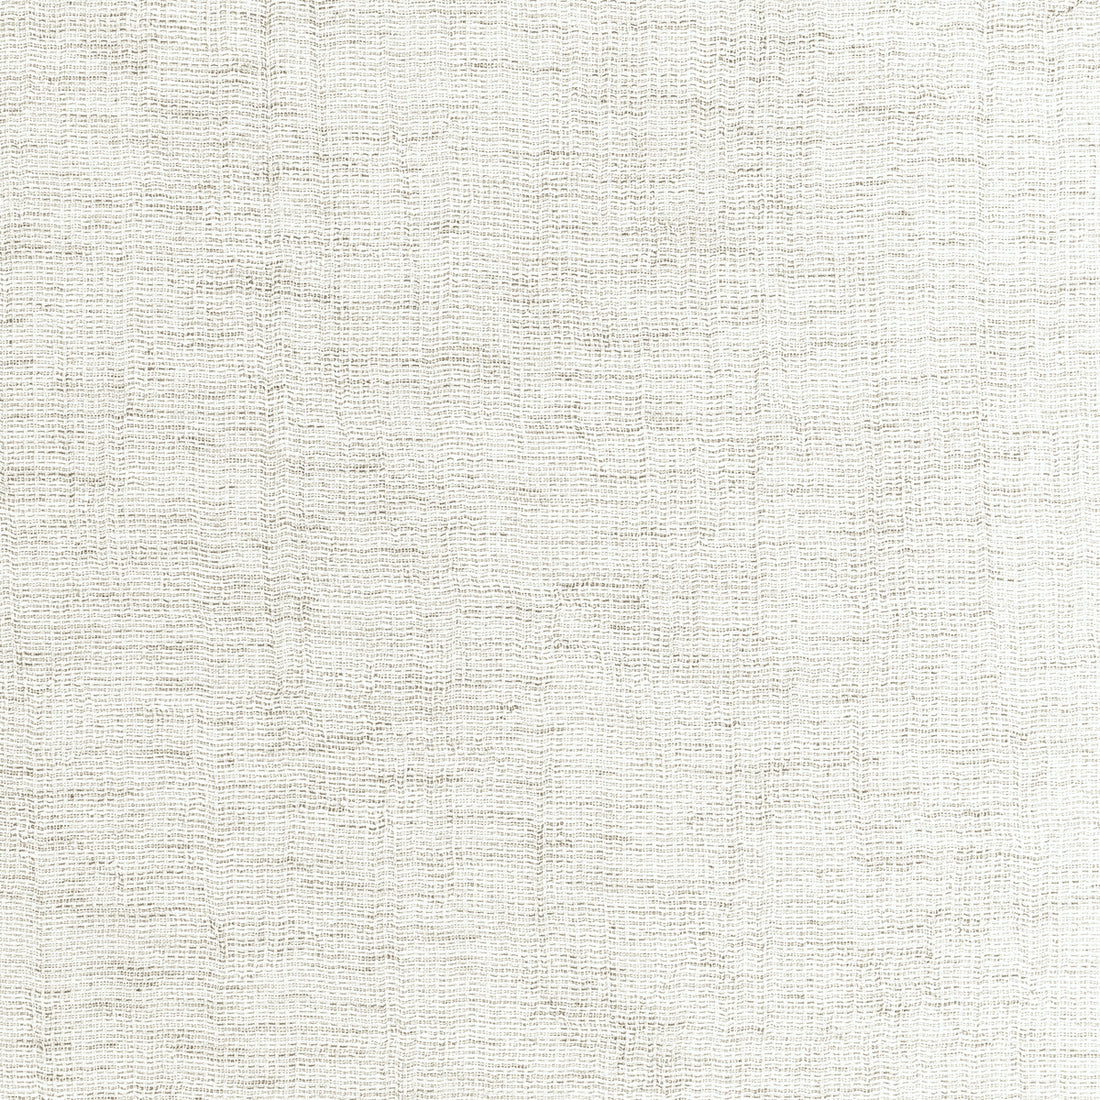 Kravet Basics fabric in 4881-101 color - pattern 4881.101.0 - by Kravet Basics